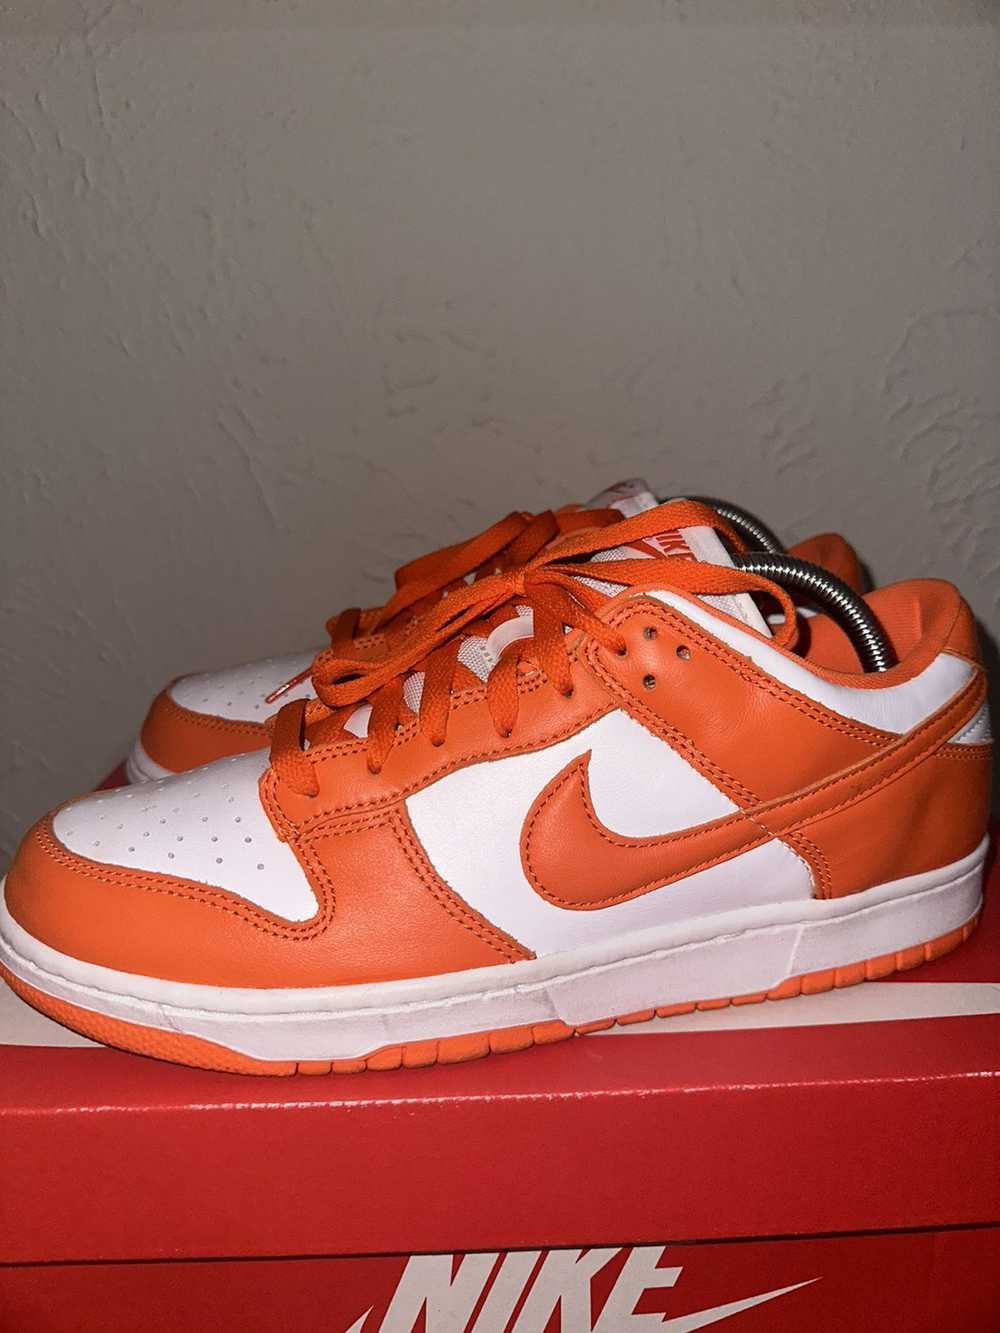 Nike Nike Dunk Low “Syracuse” - image 4